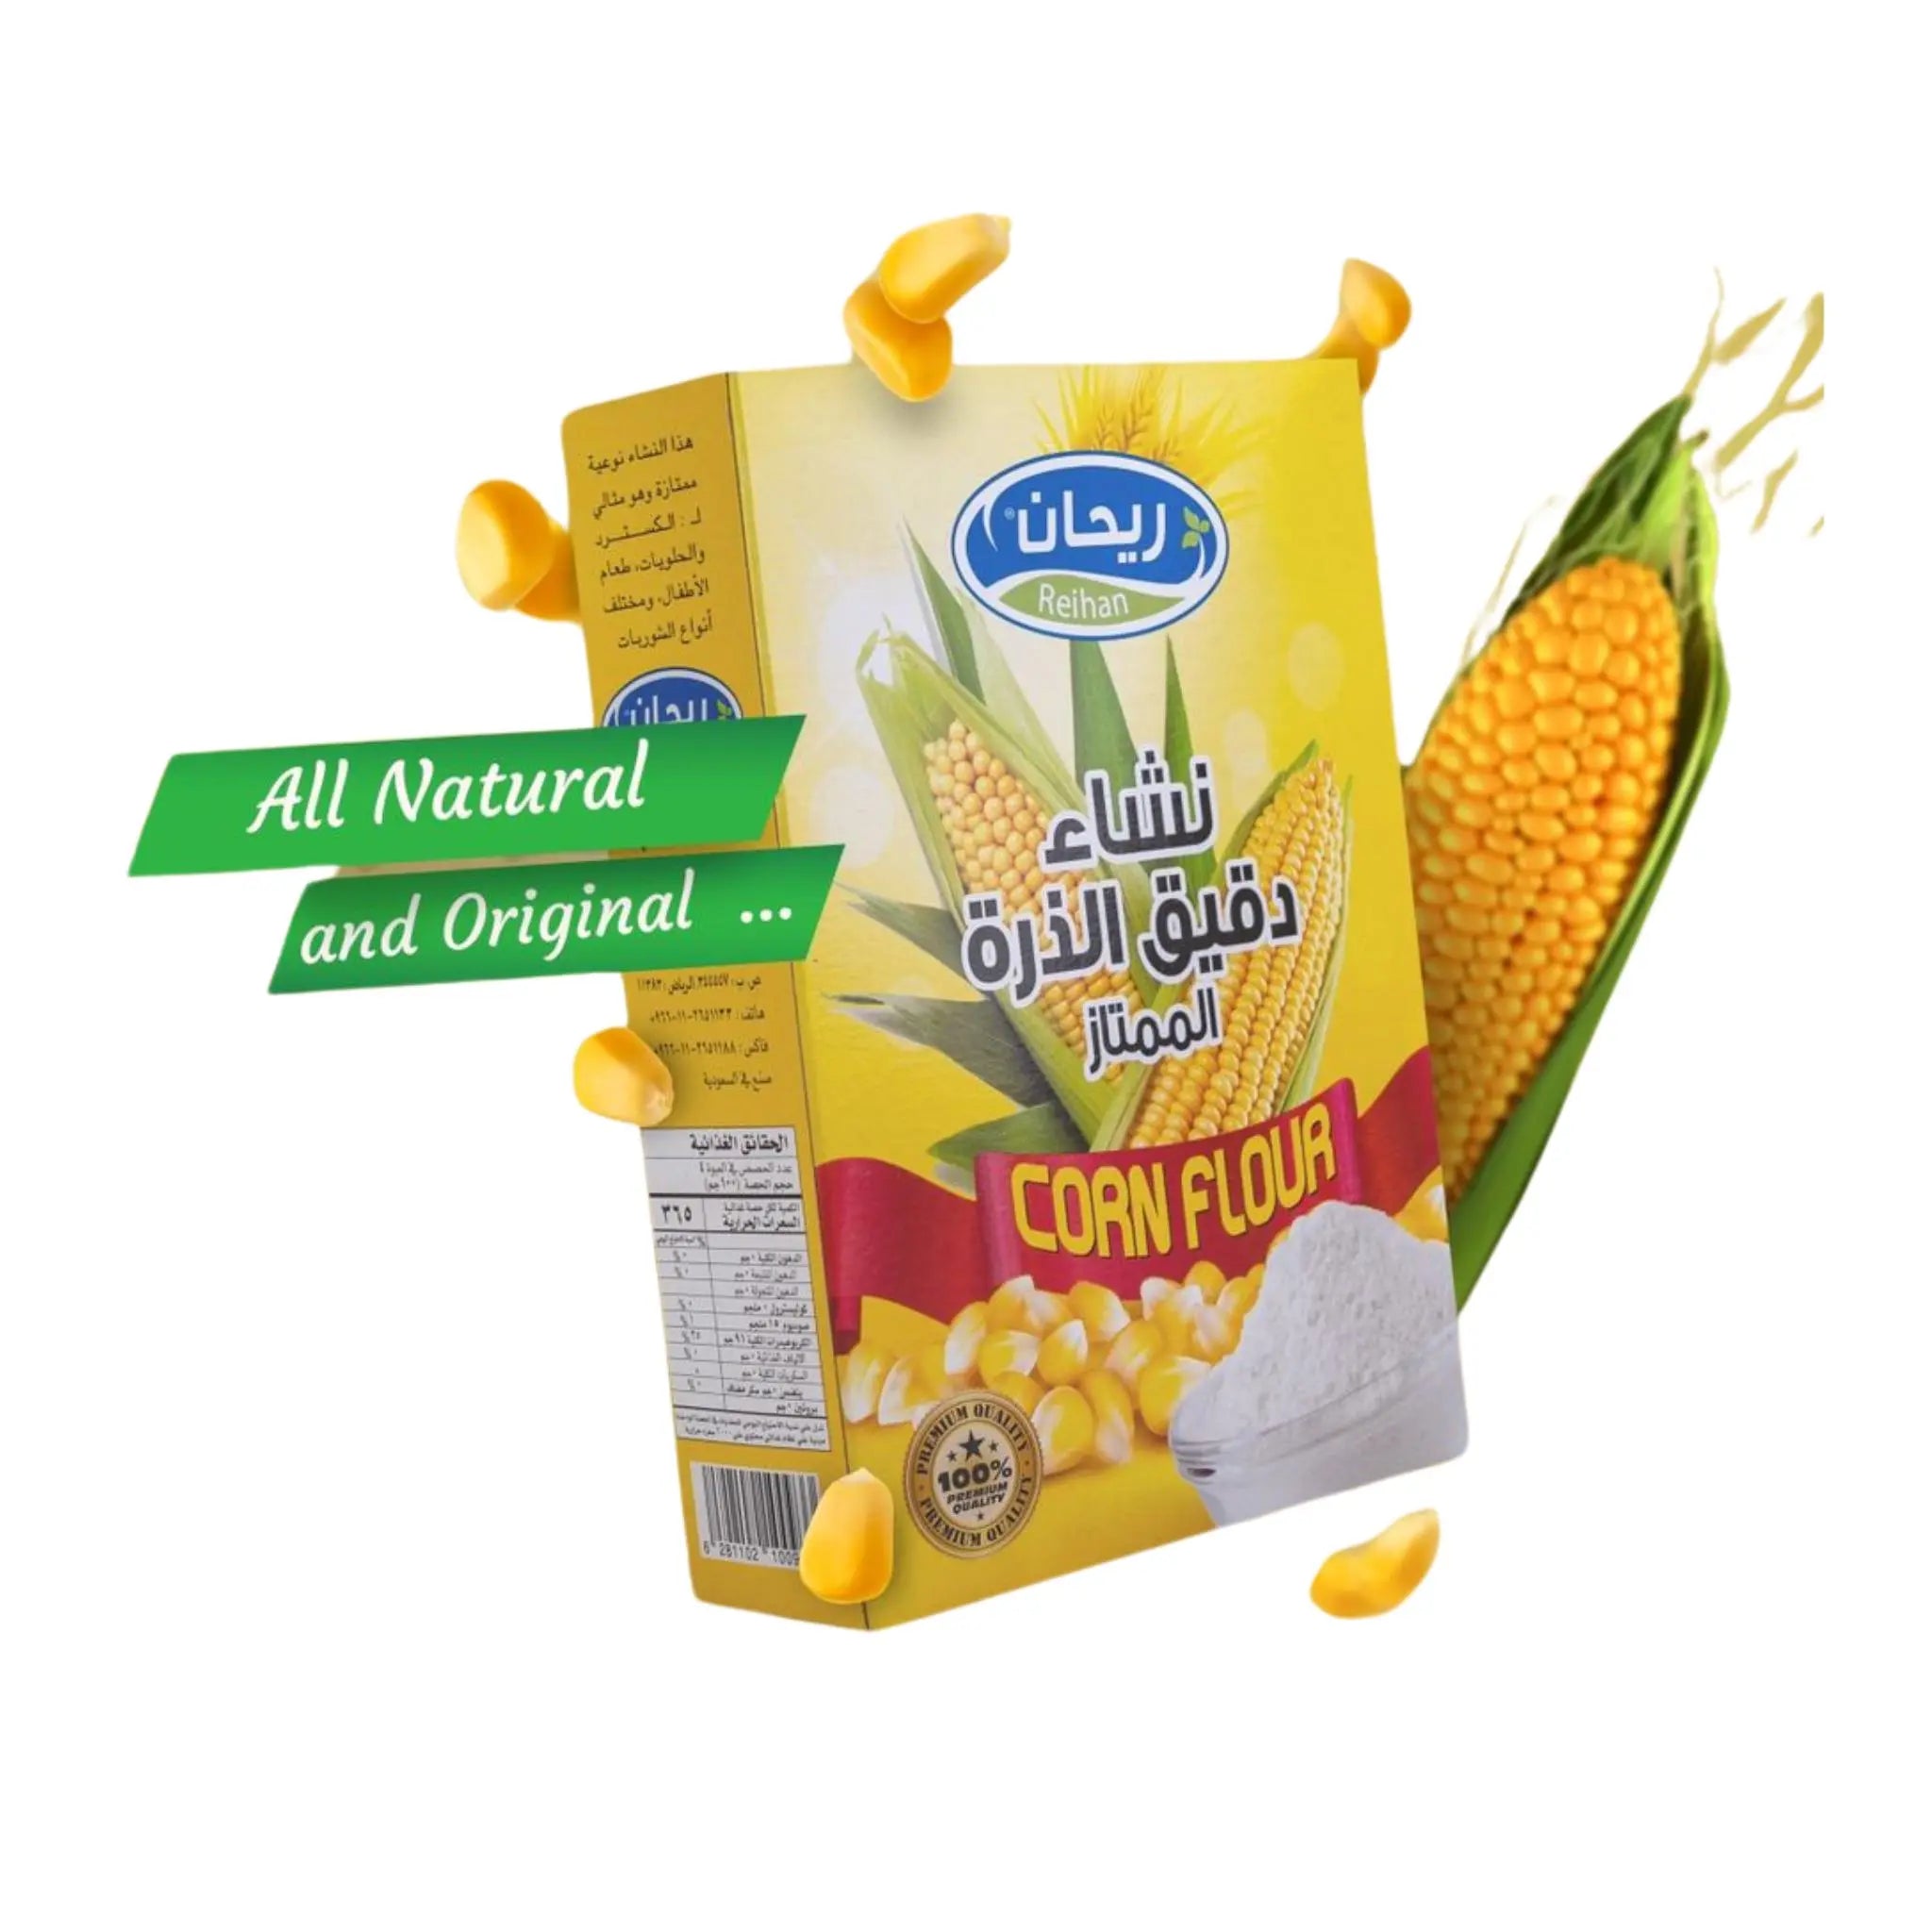 Premium Reihan Corn Flour - Essential Ingredient for Your Recipes